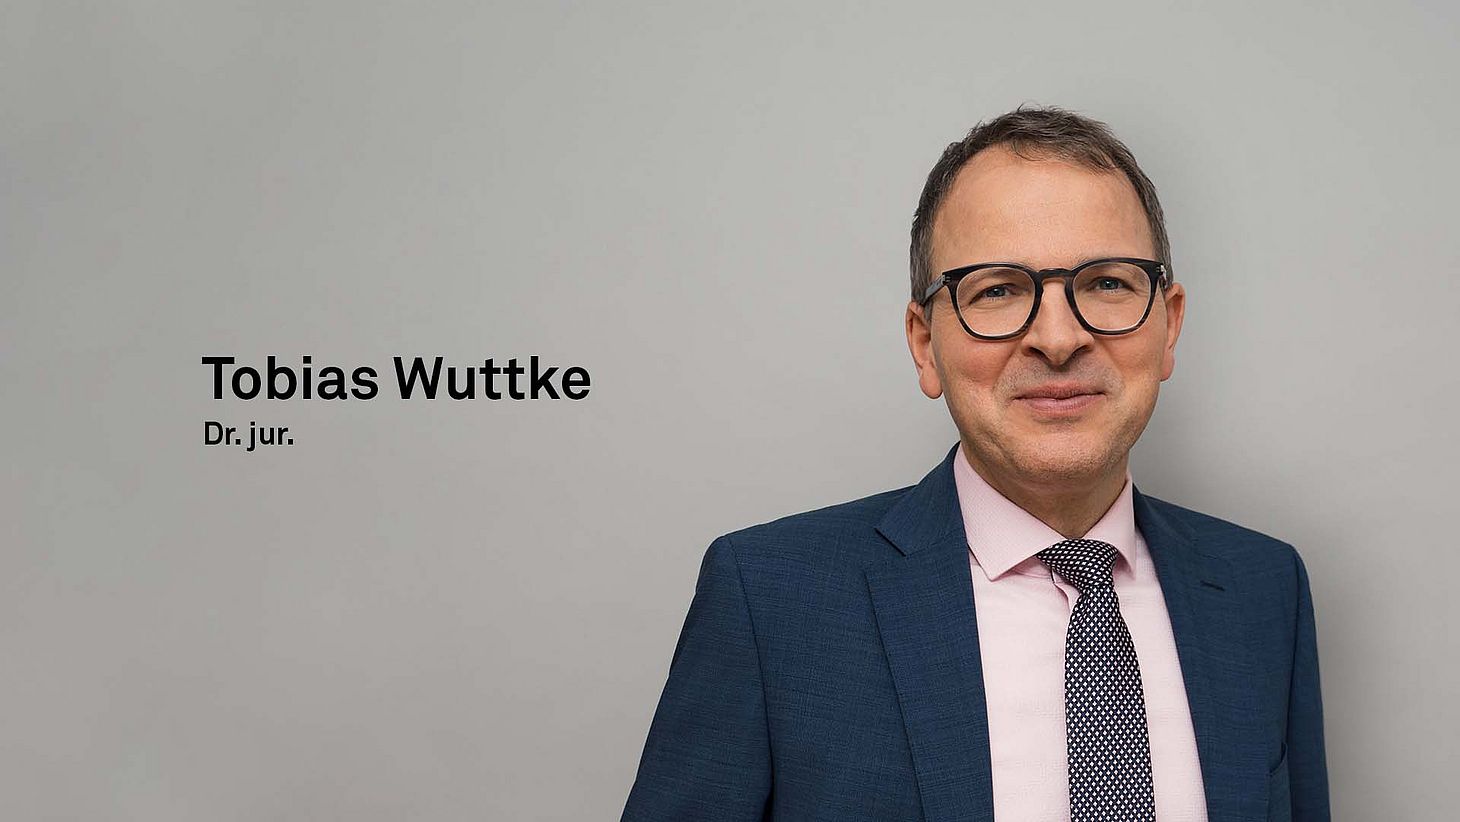 Dr. jur. Tobias Wuttke